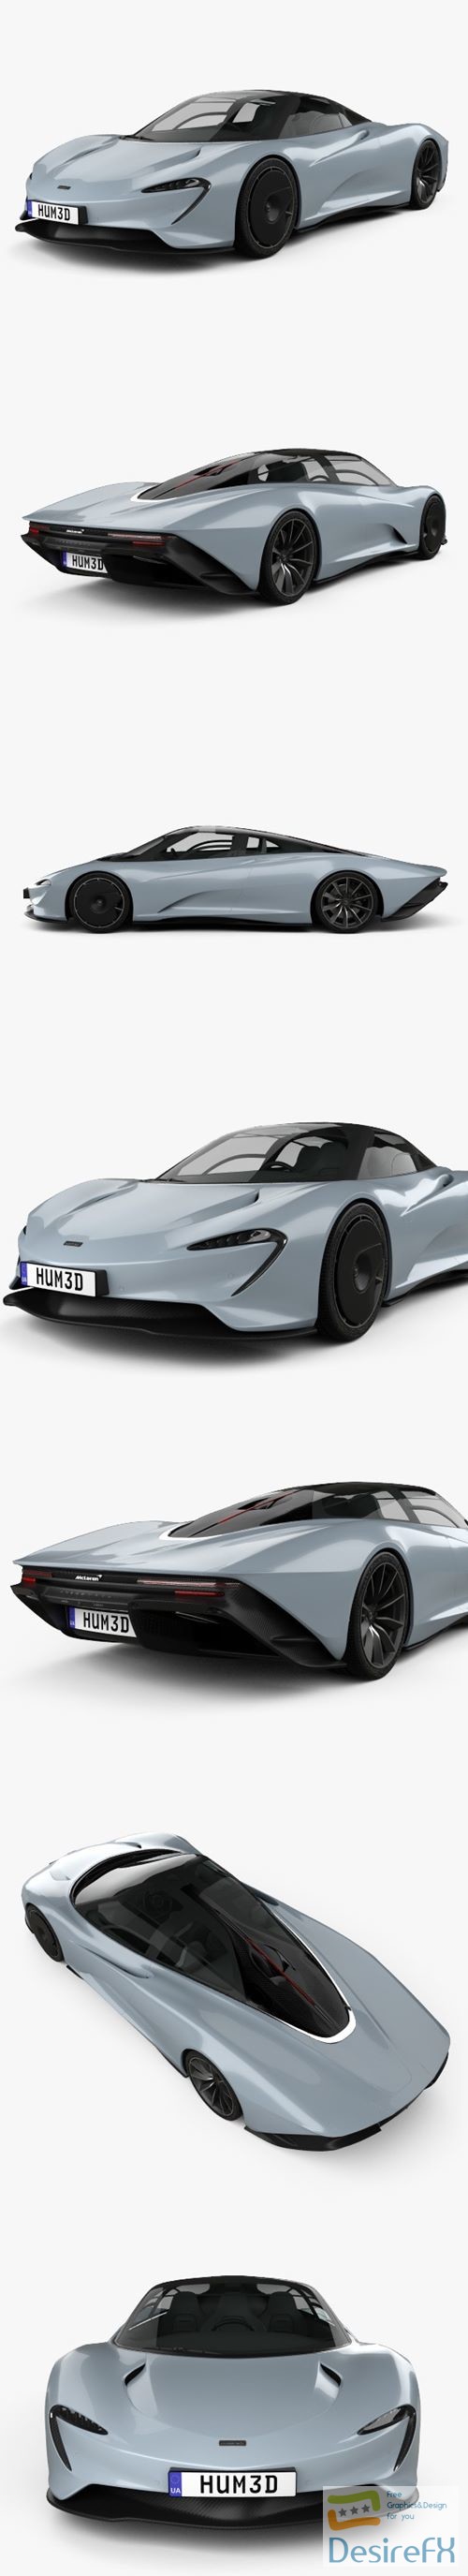 McLaren Speedtail 2019 3D Model